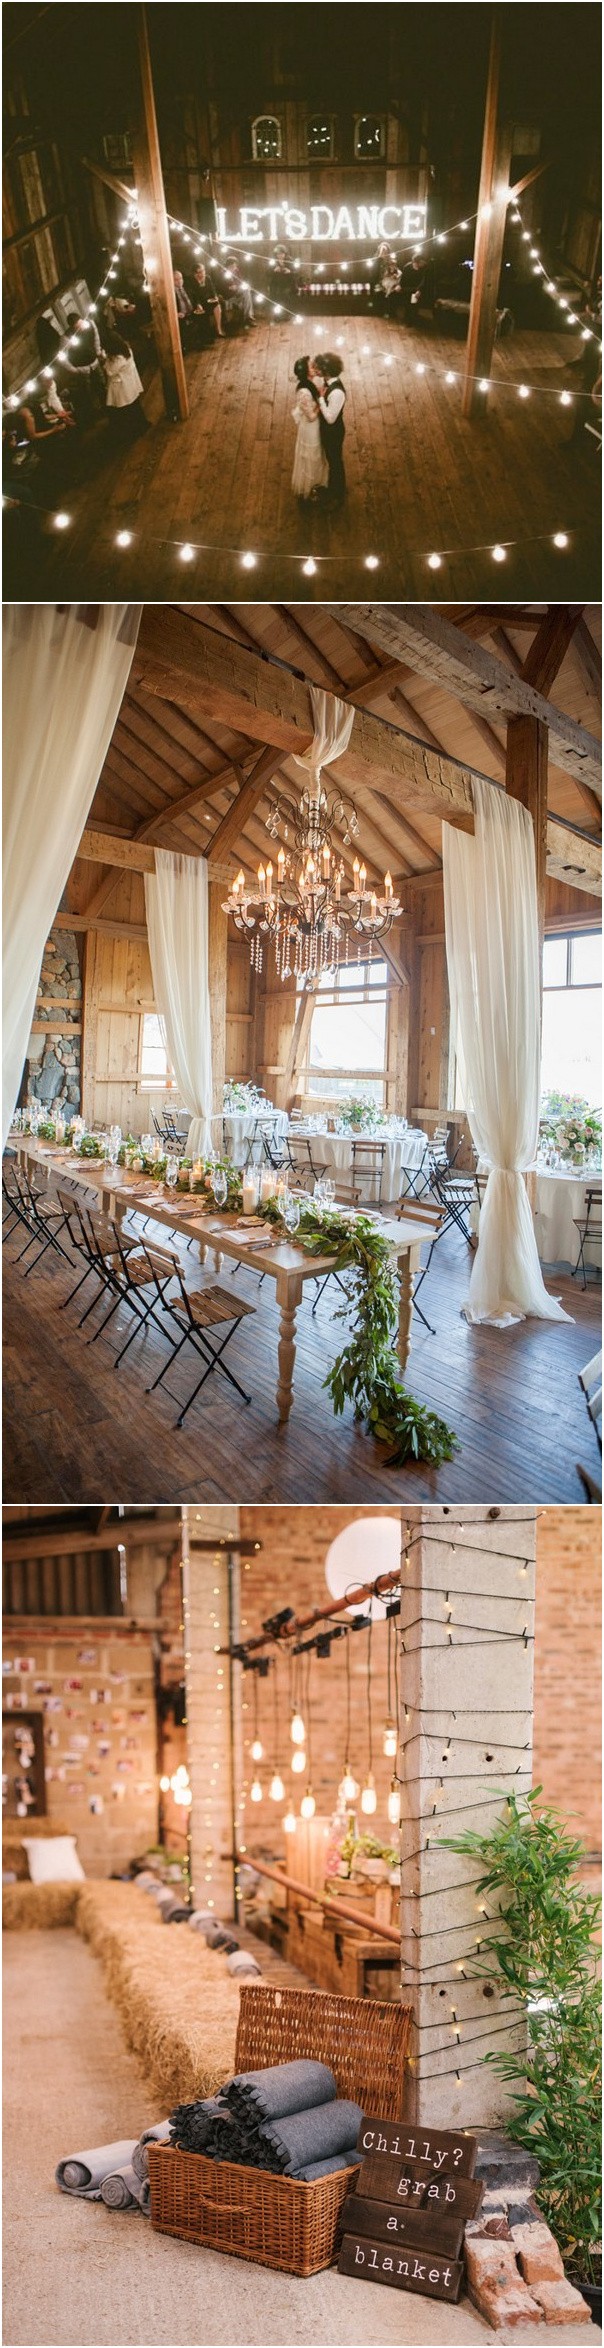 rustic barn wedding decoration ideas